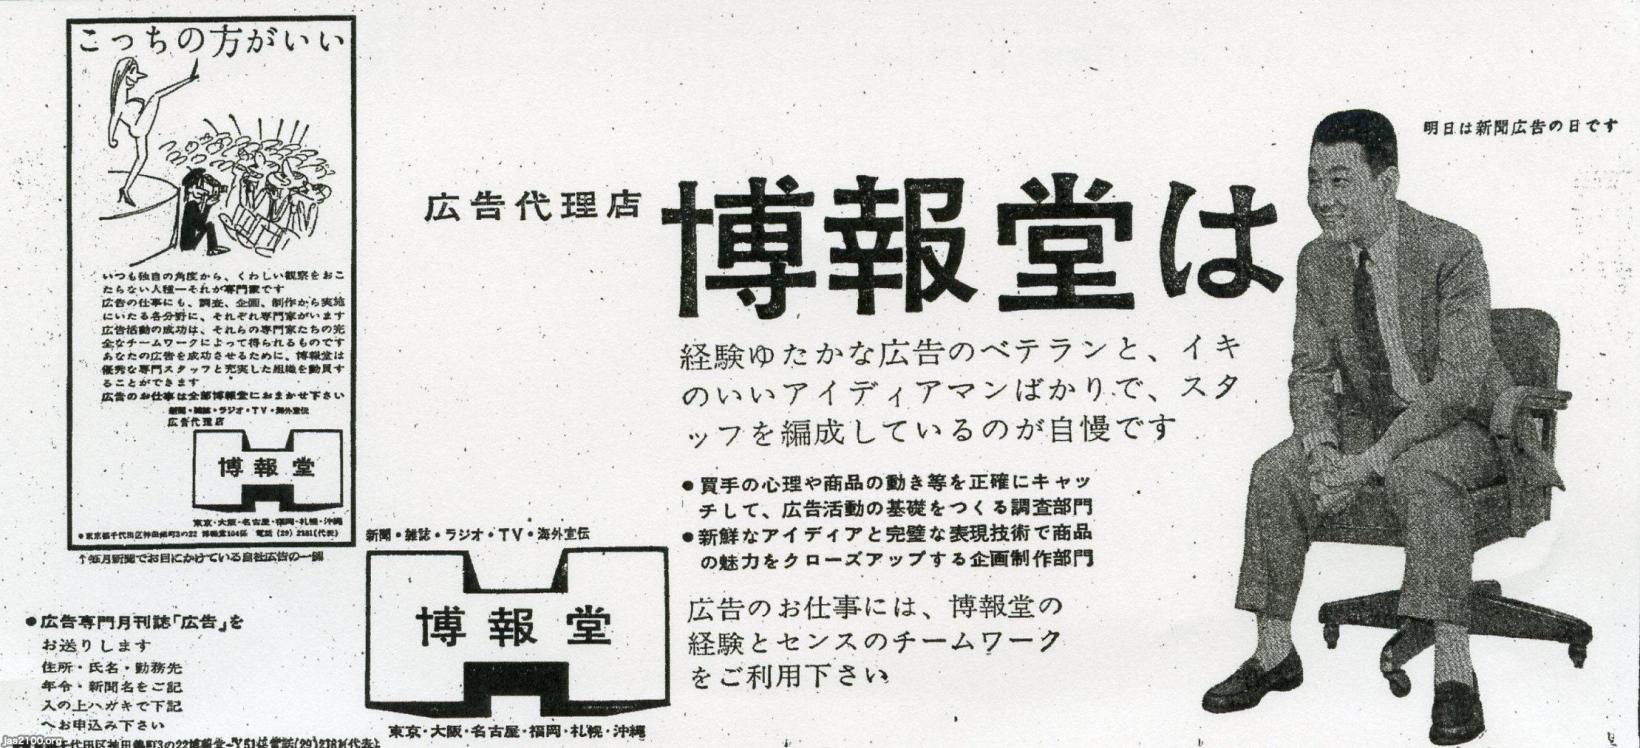 広告 昭和34年 広告会社の広告 広告雑誌 広告 博報堂 ジャパンアーカイブズ Japan Archives